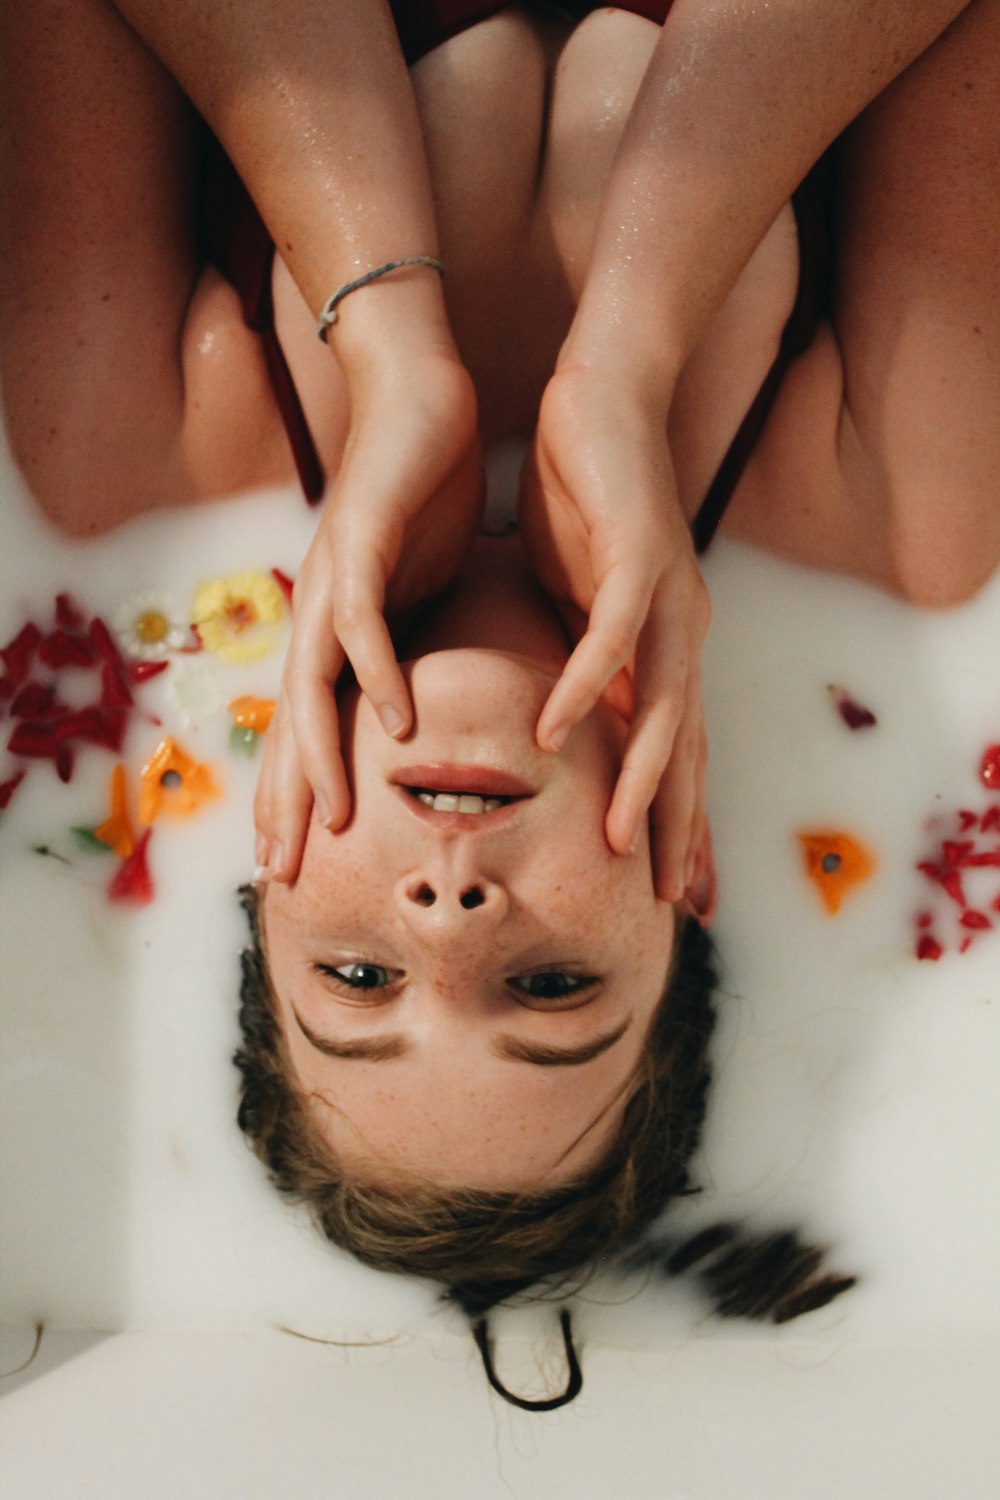 Une femme allongée dans une baignoire, les mains sur la tête